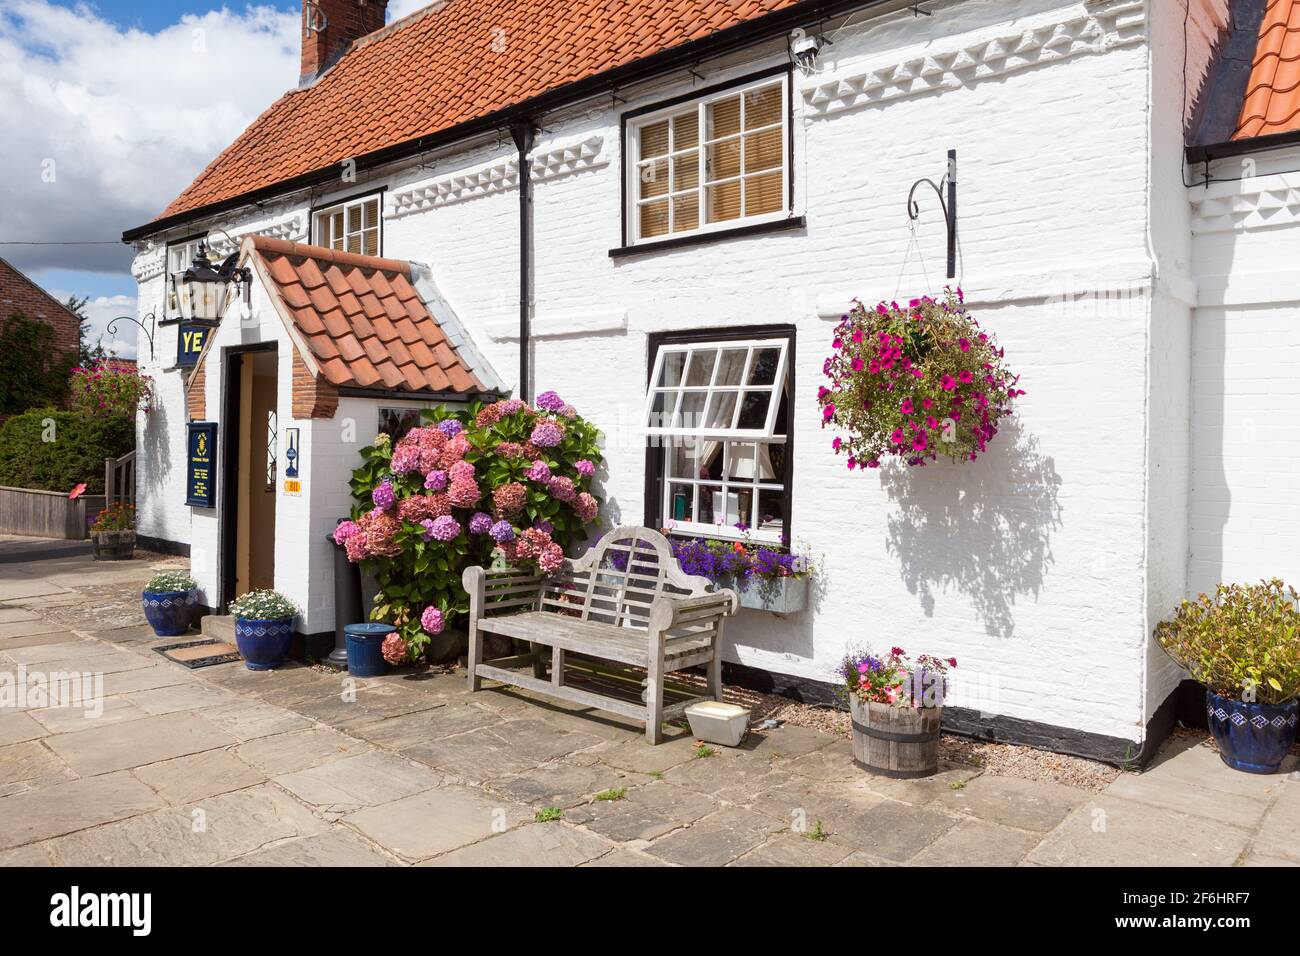 YE Old Sun Inn, un pub de village traditionnel à Colton près de Tadcaster, dans le North Yorkshire Banque D'Images